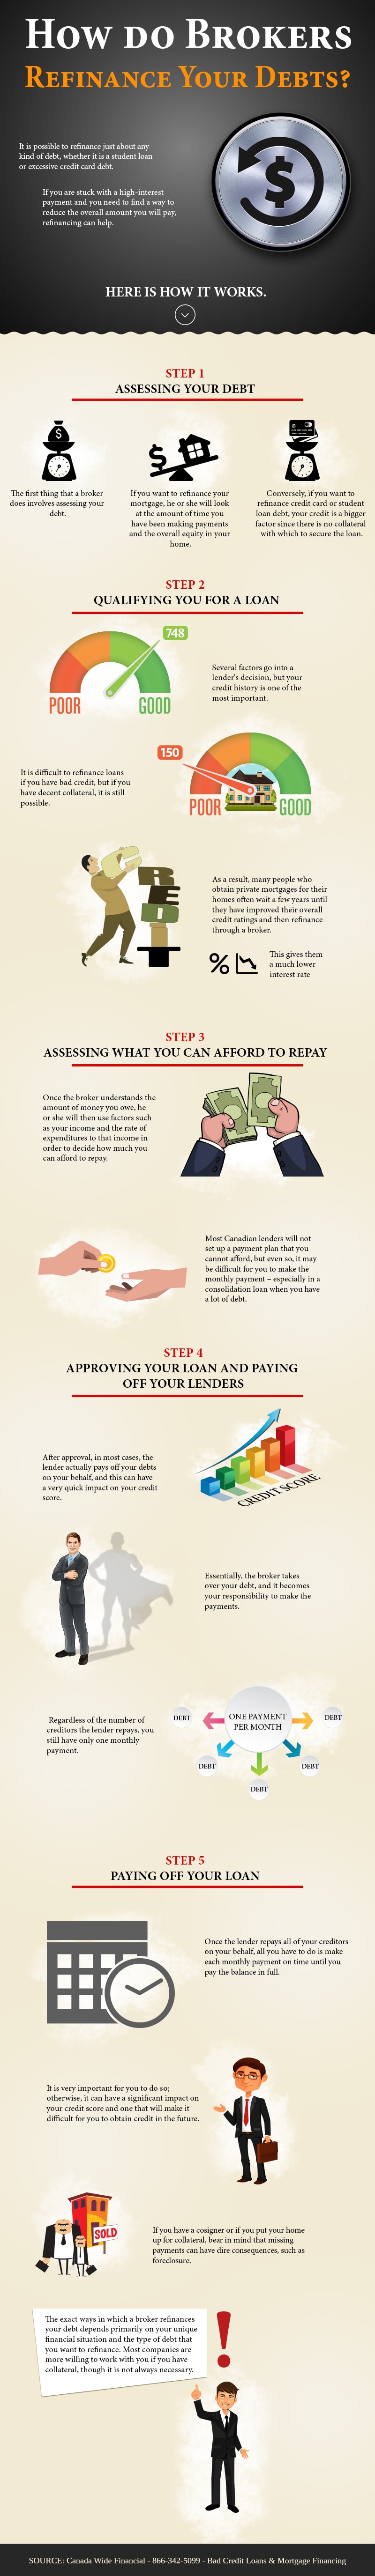 How do Brokers Refinance Your Debts - Infographic